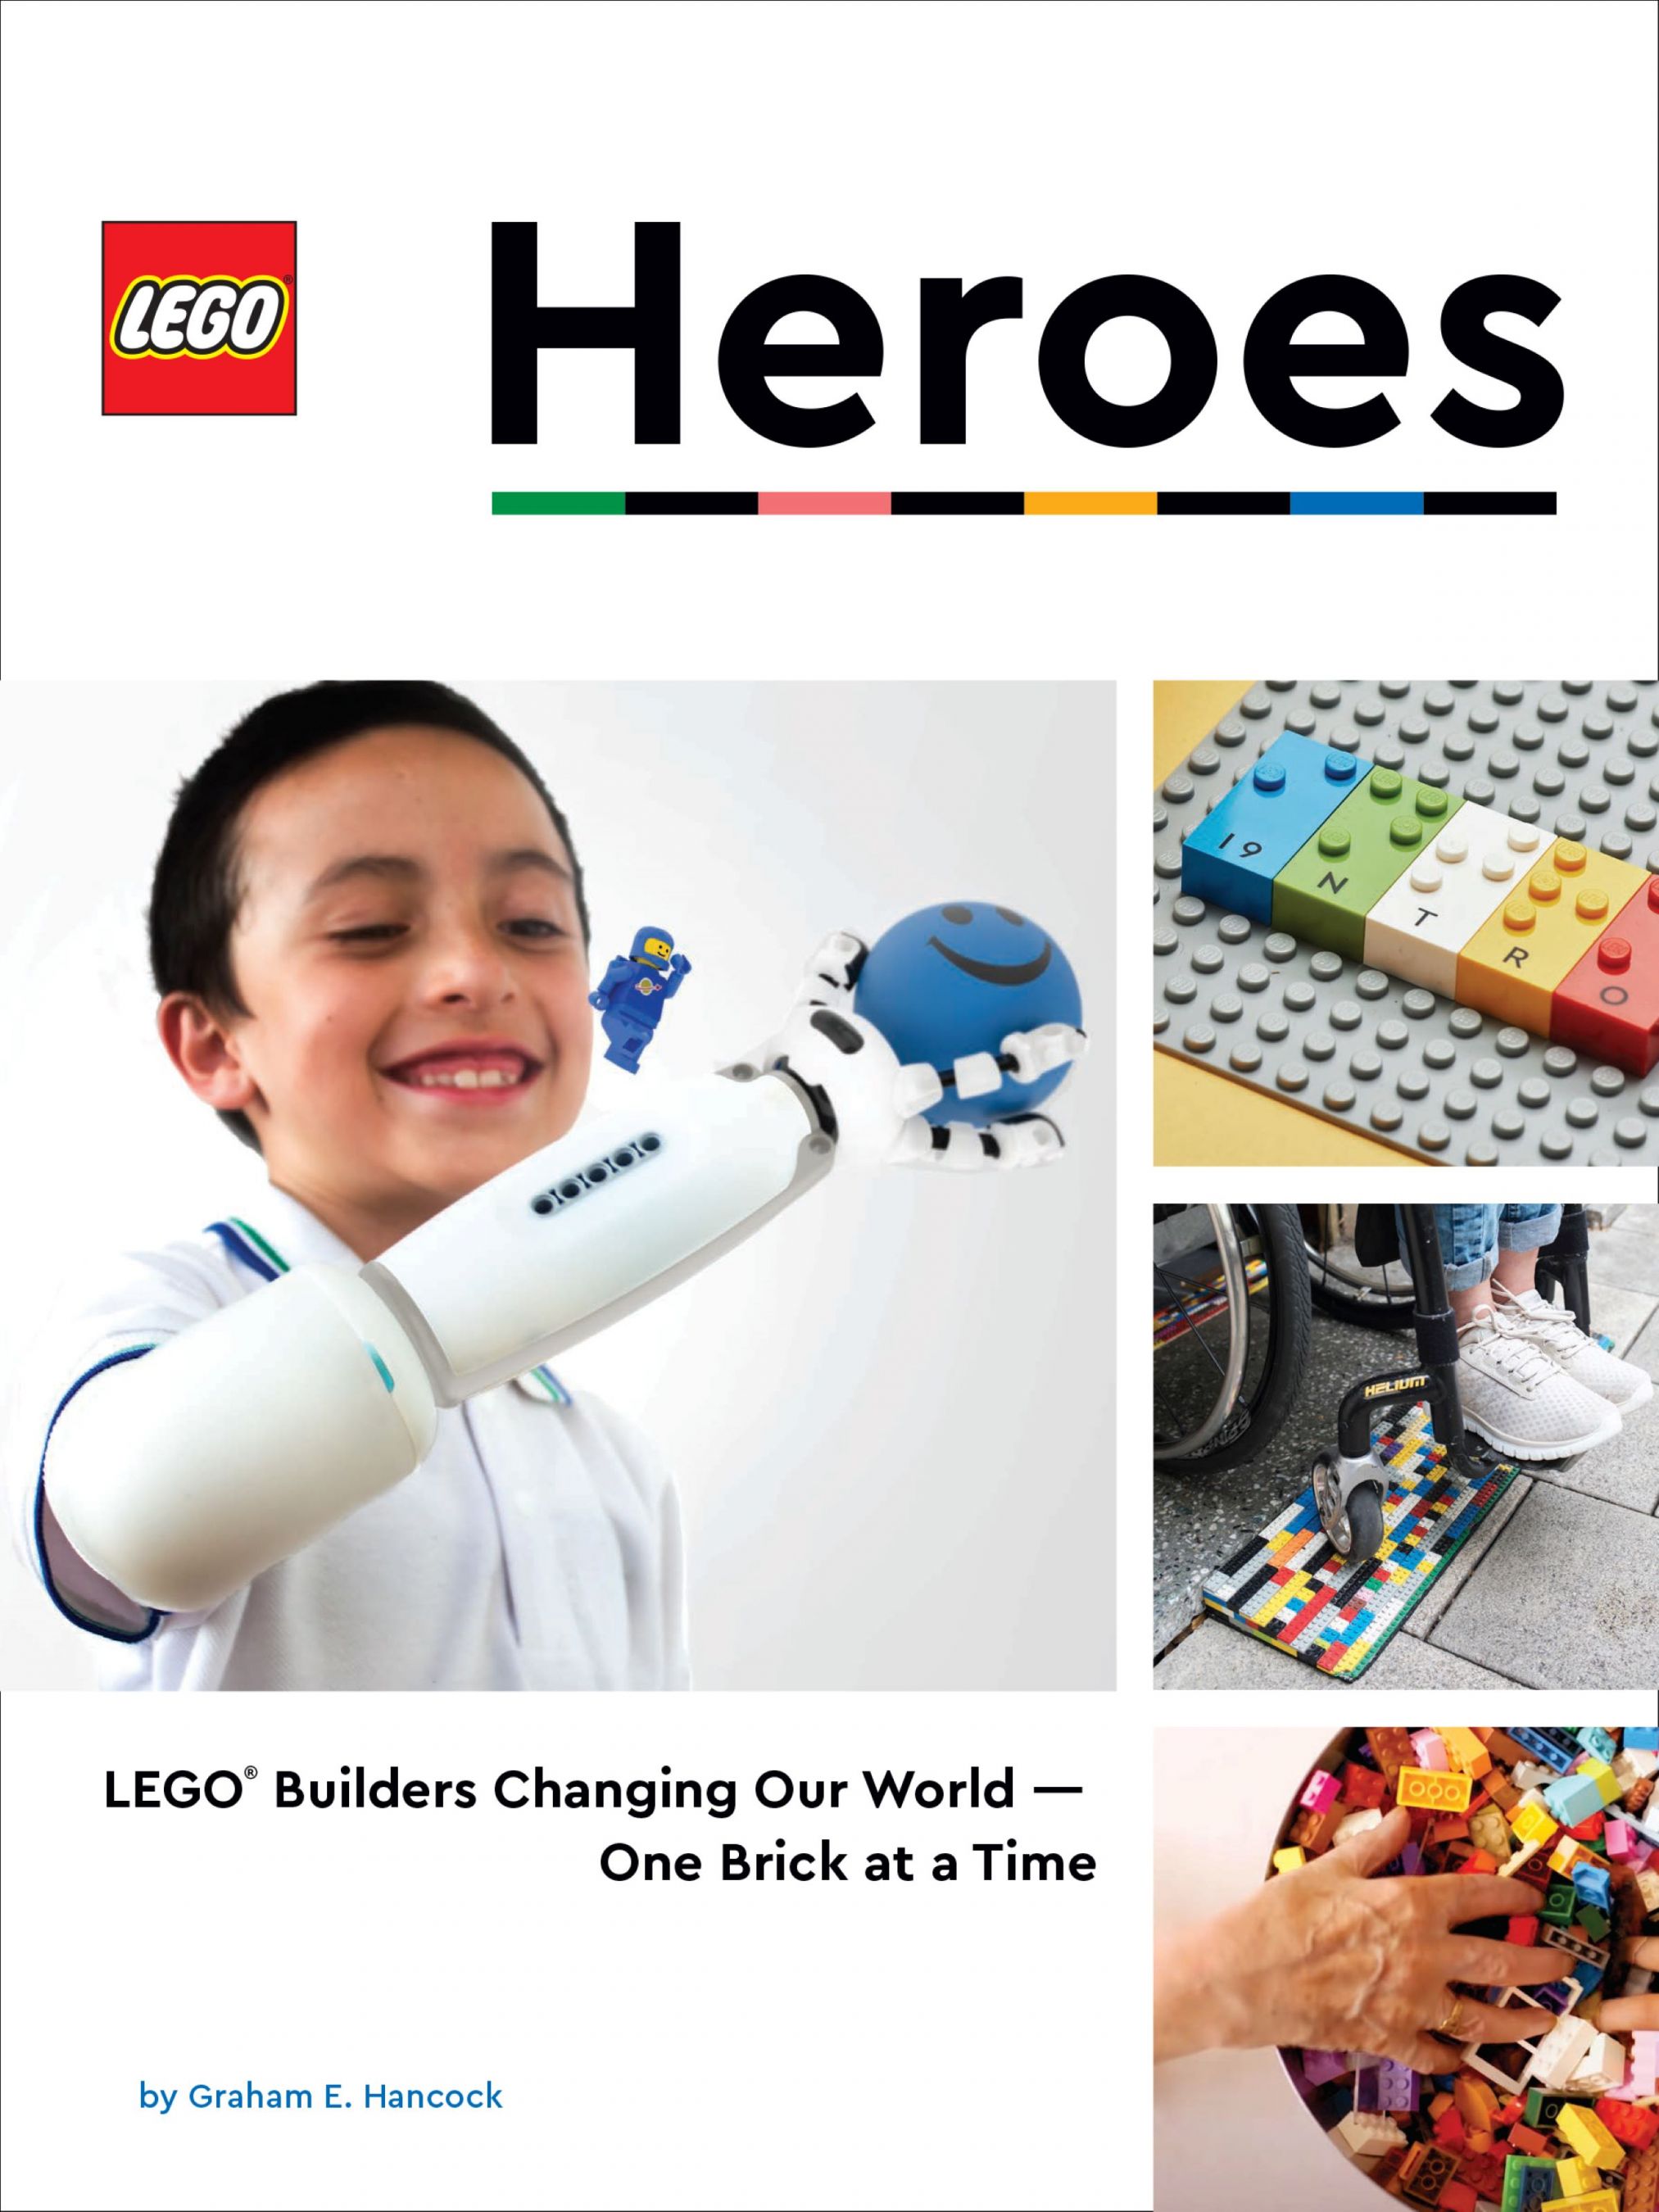 LEGO Buch 5008079 LEGO® Heroes LEGO_5008079_alt1.jpg